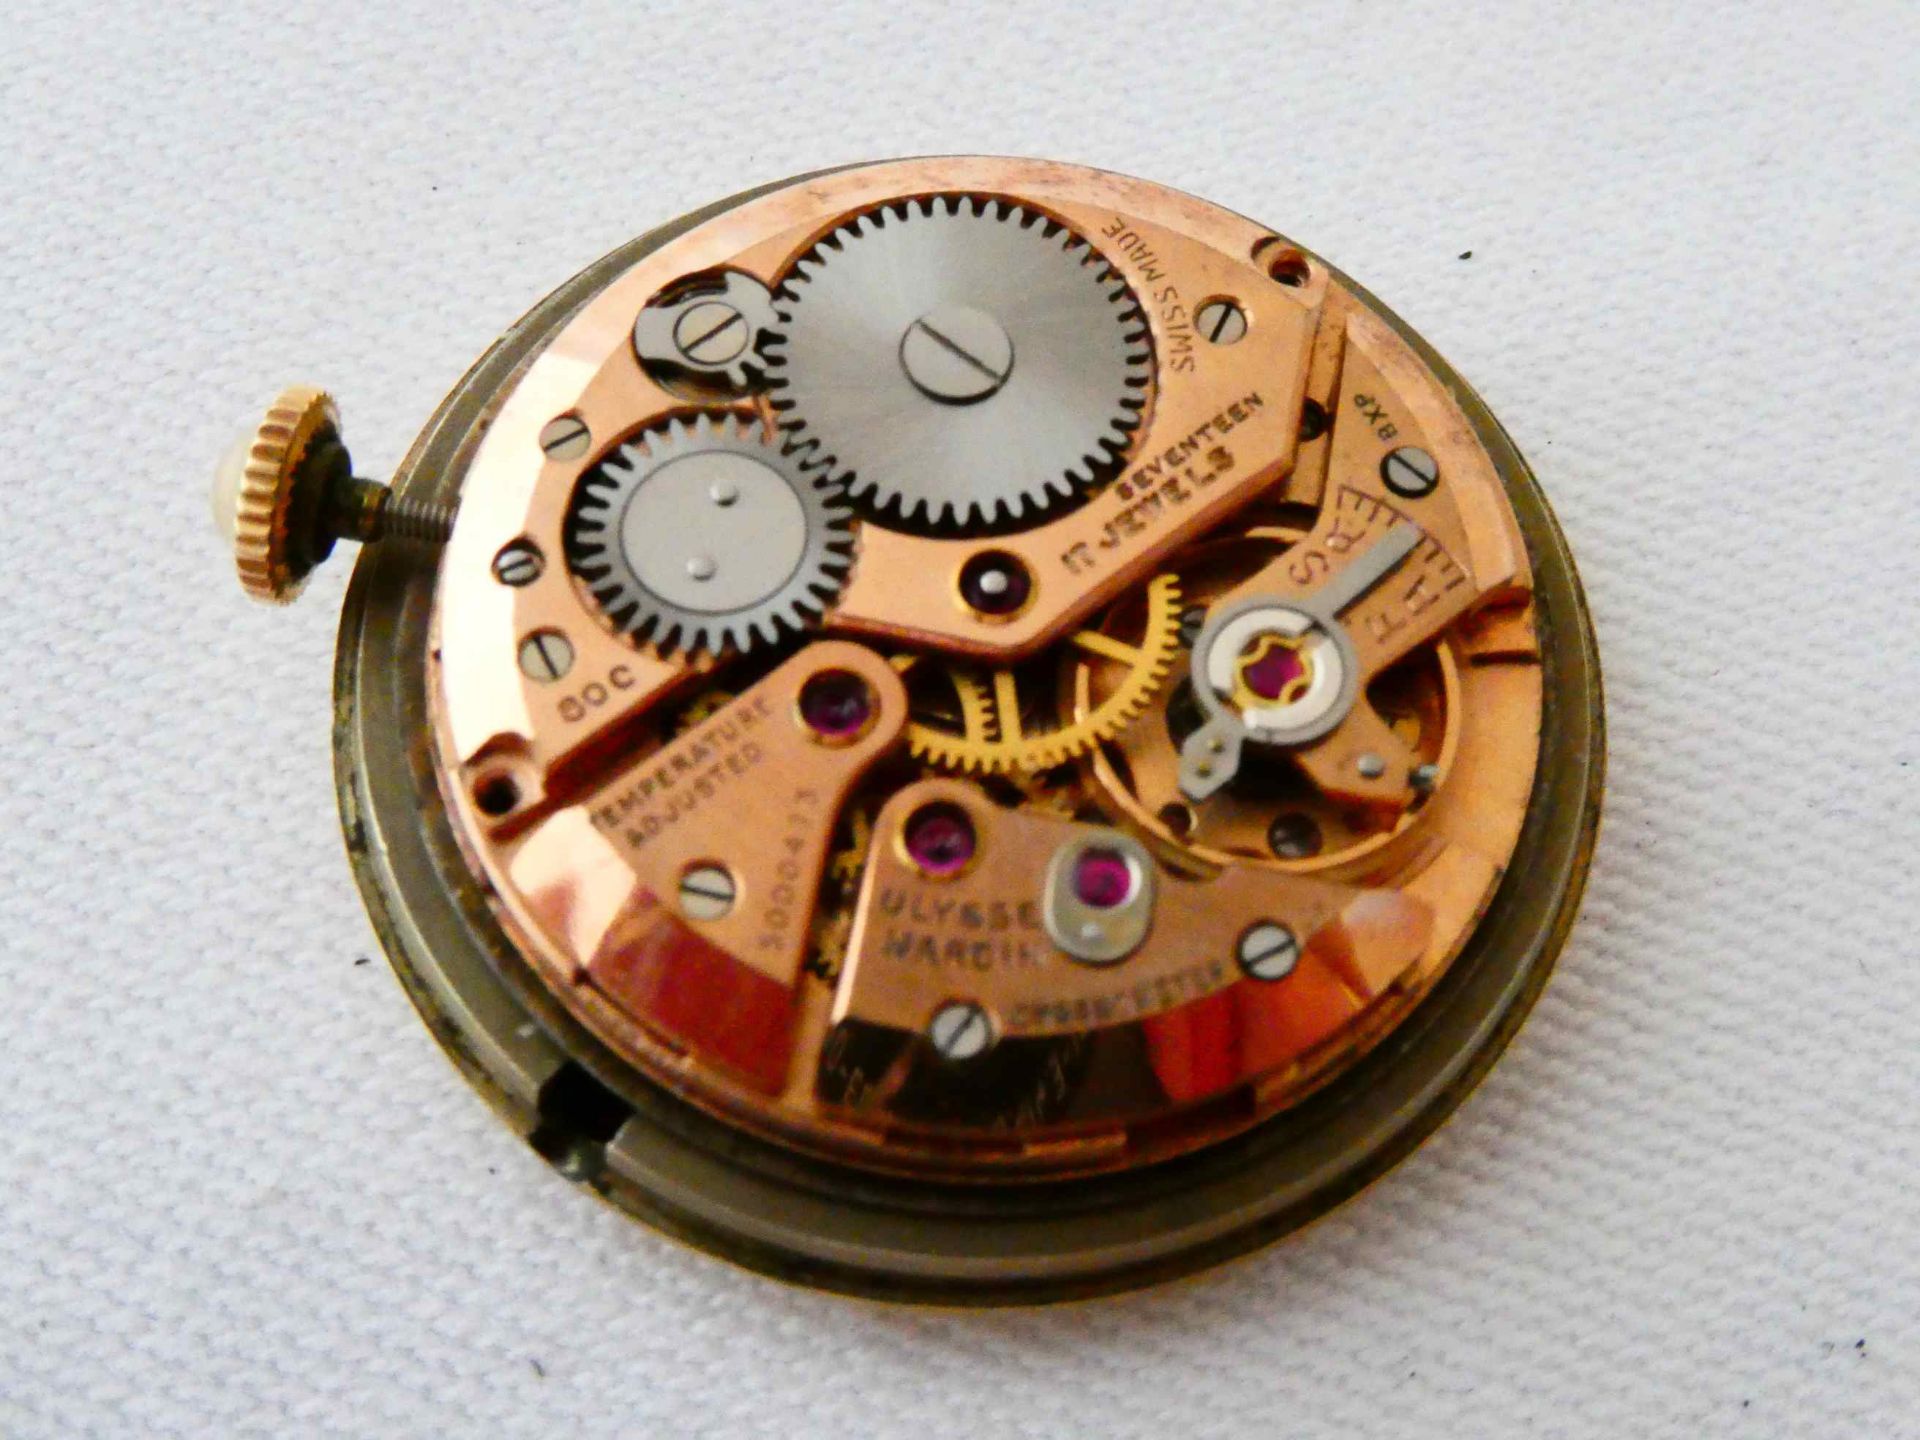 Ulysse Nardin Chronometer - Image 3 of 6